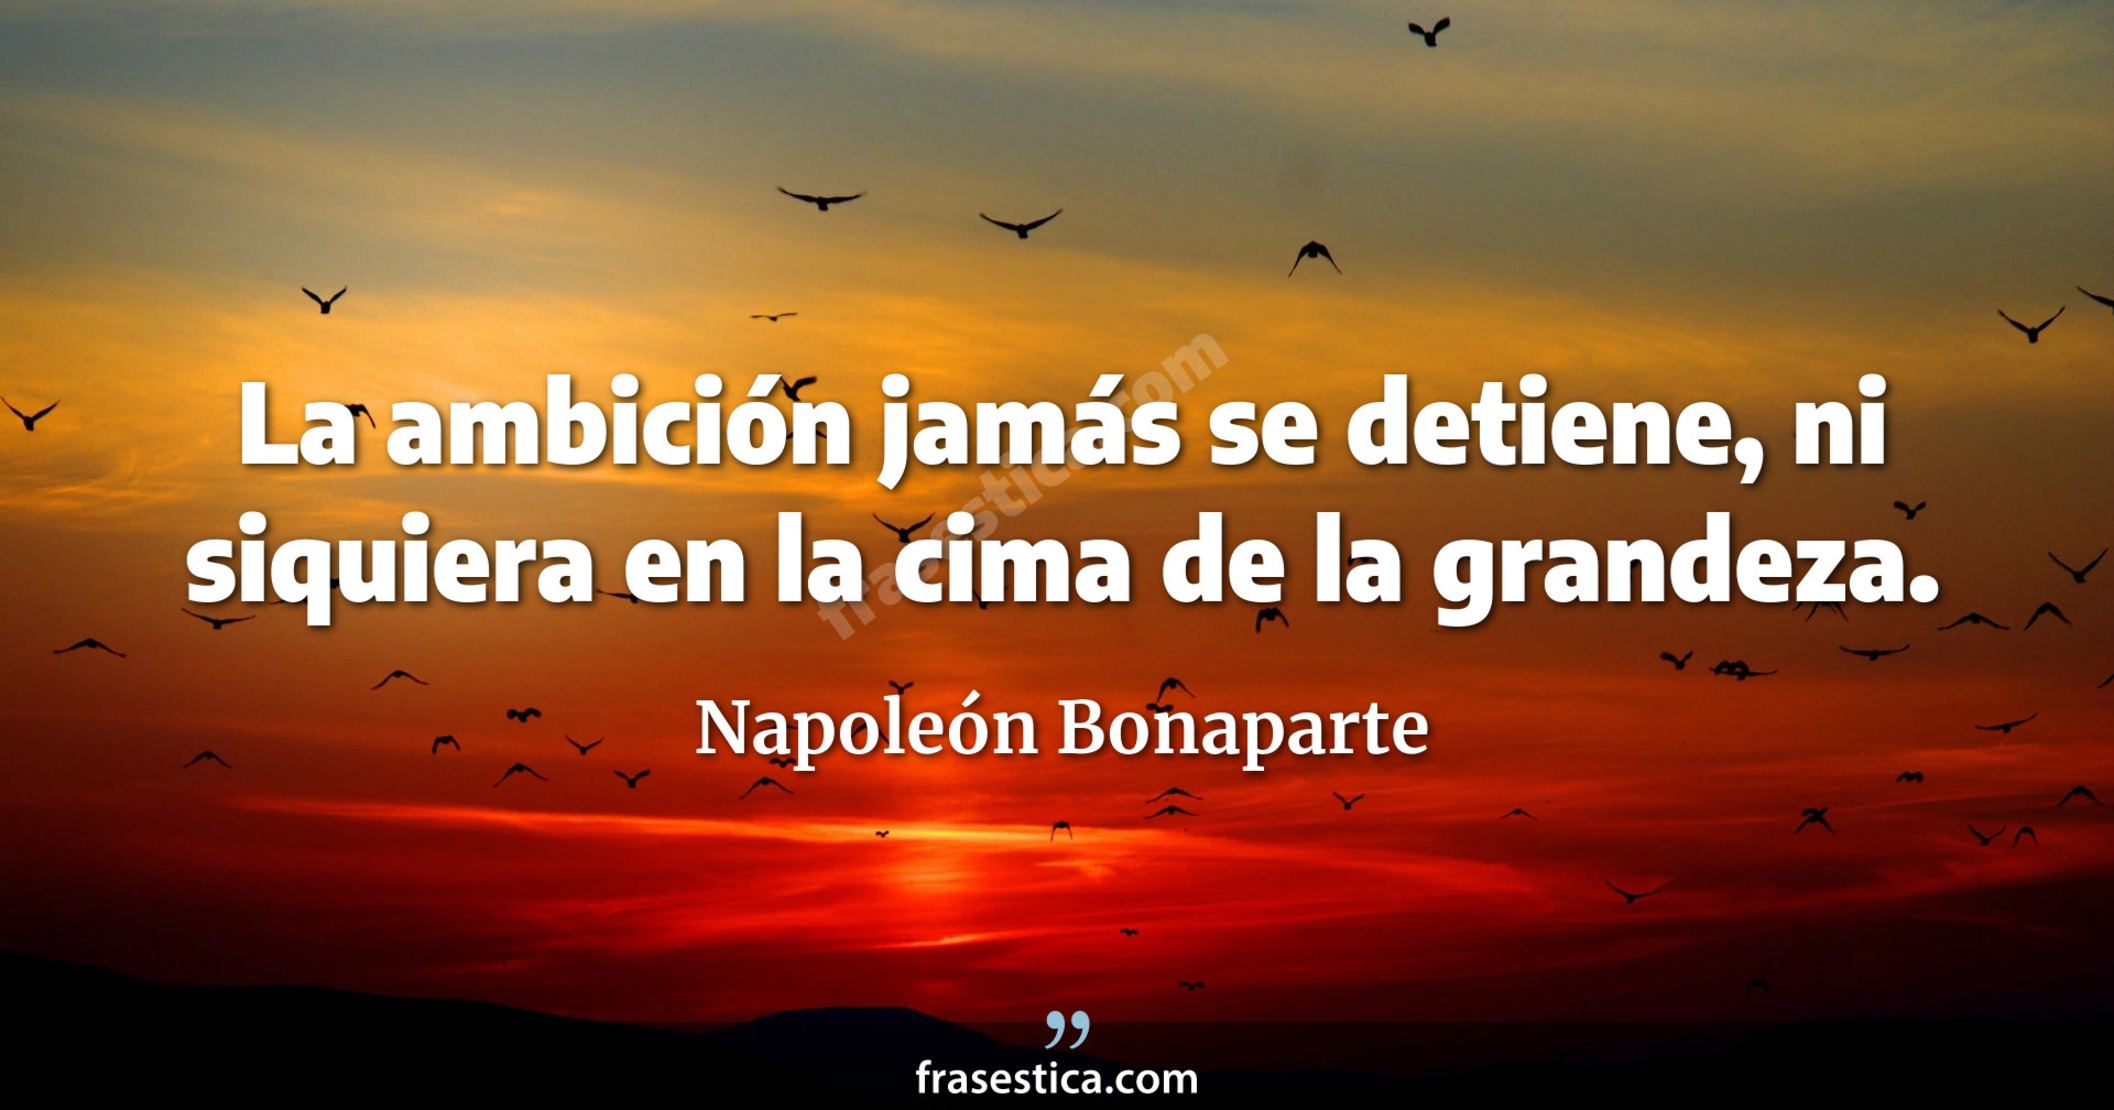 La ambición jamás se detiene, ni siquiera en la cima de la grandeza. - Napoleón Bonaparte